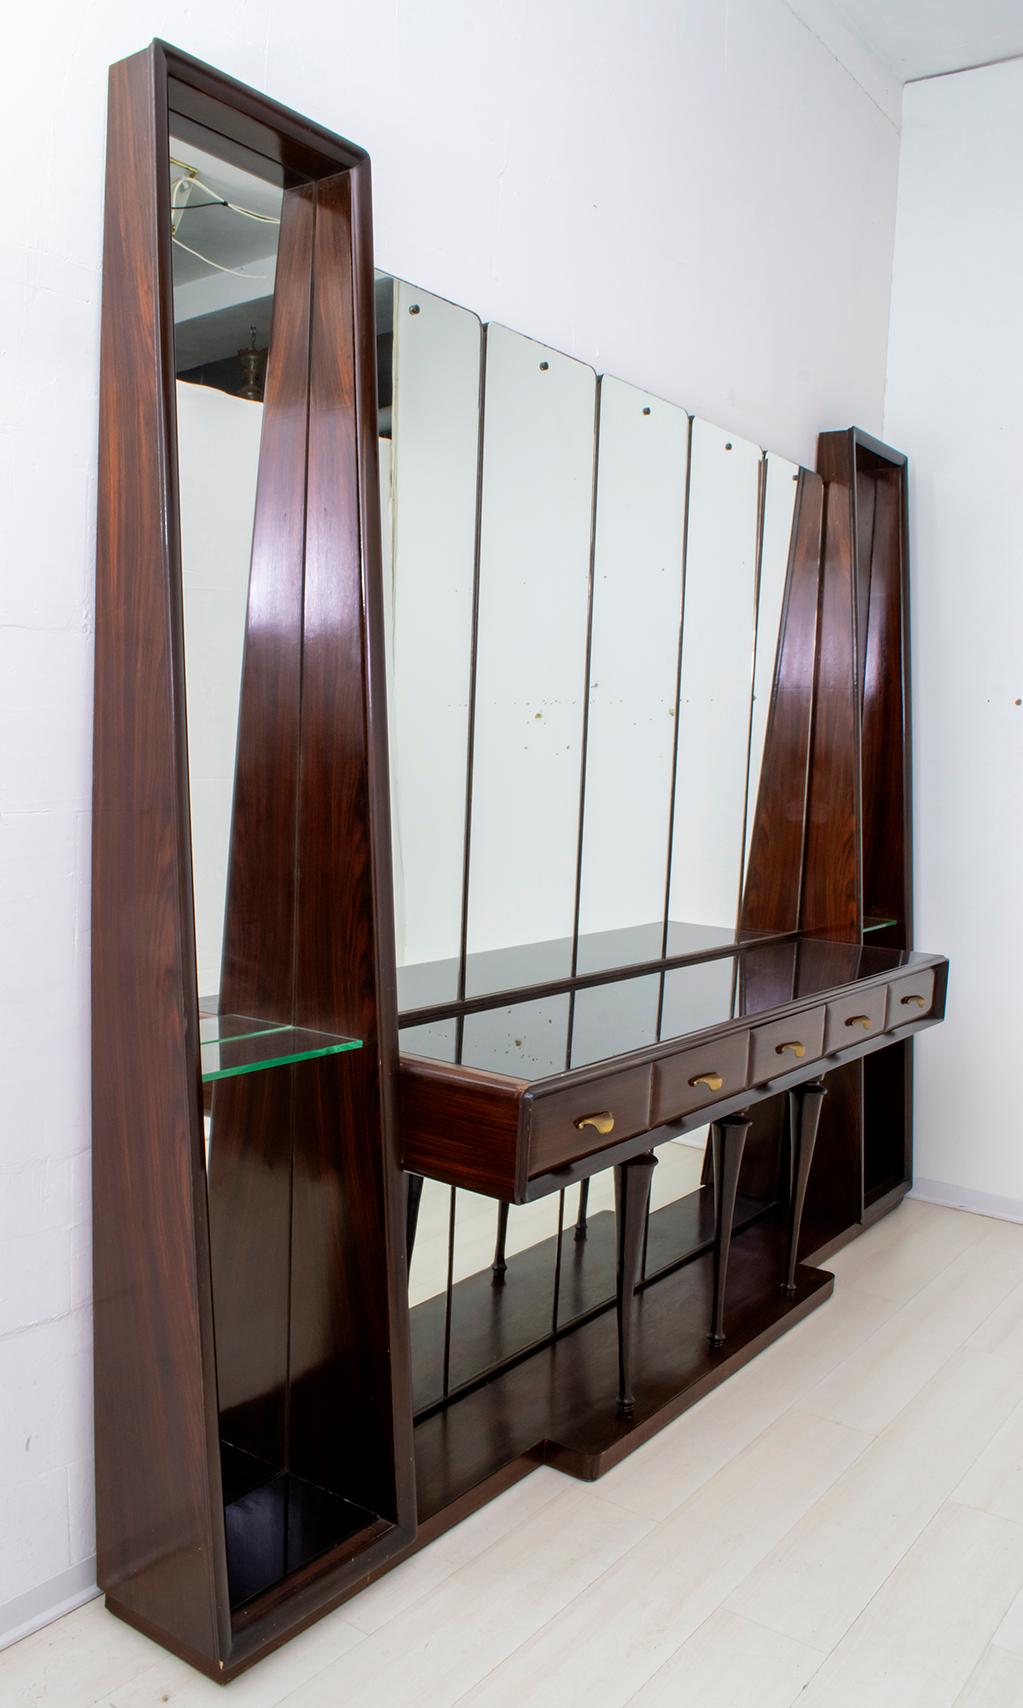 Grand miroir conçu par le célèbre designer Guglielmo Ulrich et produit par Arredamenti Casa entre les années 1940 et 1950. En excellent état, label Ar.Ca d'origine.

En 1930, Guglielmo Ulrich fonde la société Ar.Ca (home furnishings), pour